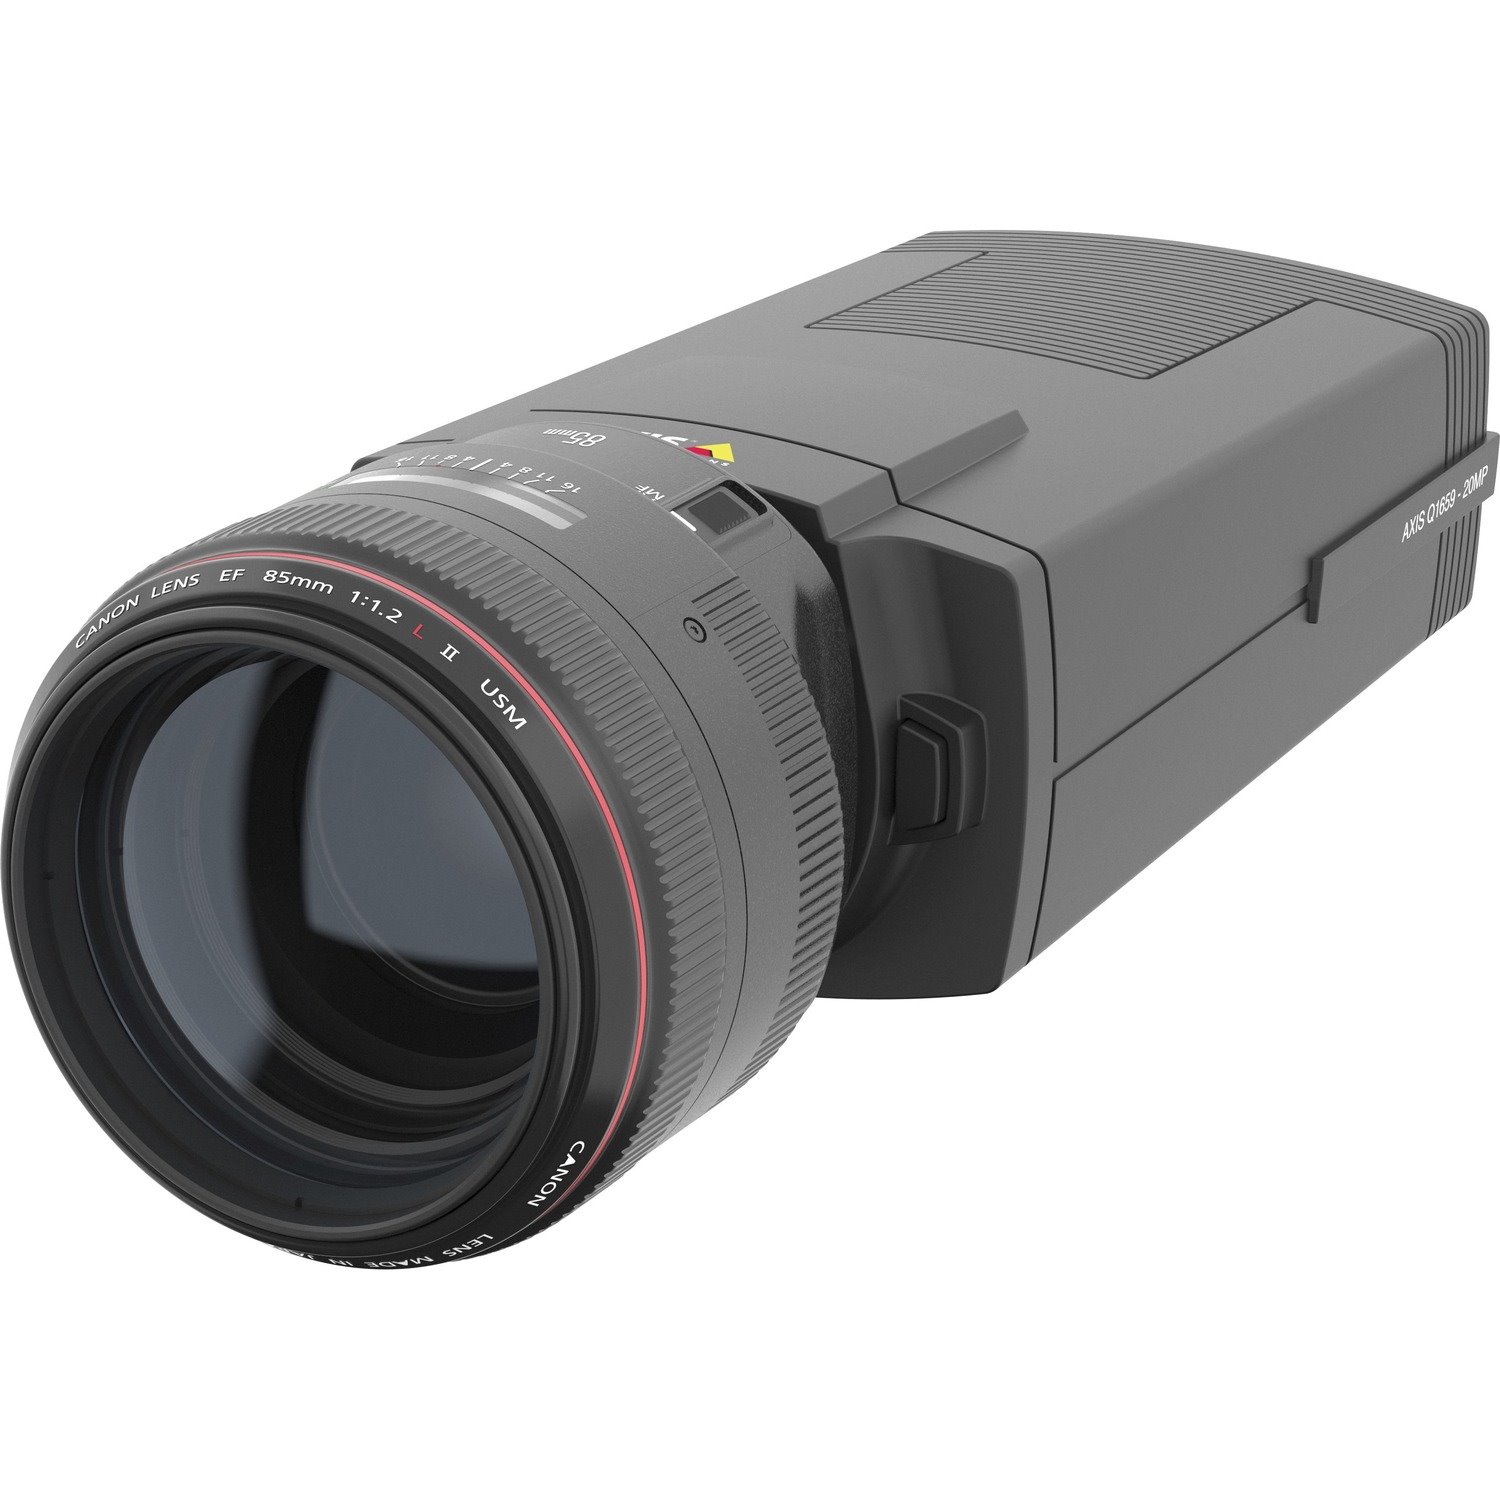 AXIS Q1659 20 Megapixel Network Camera - Color - TAA Compliant